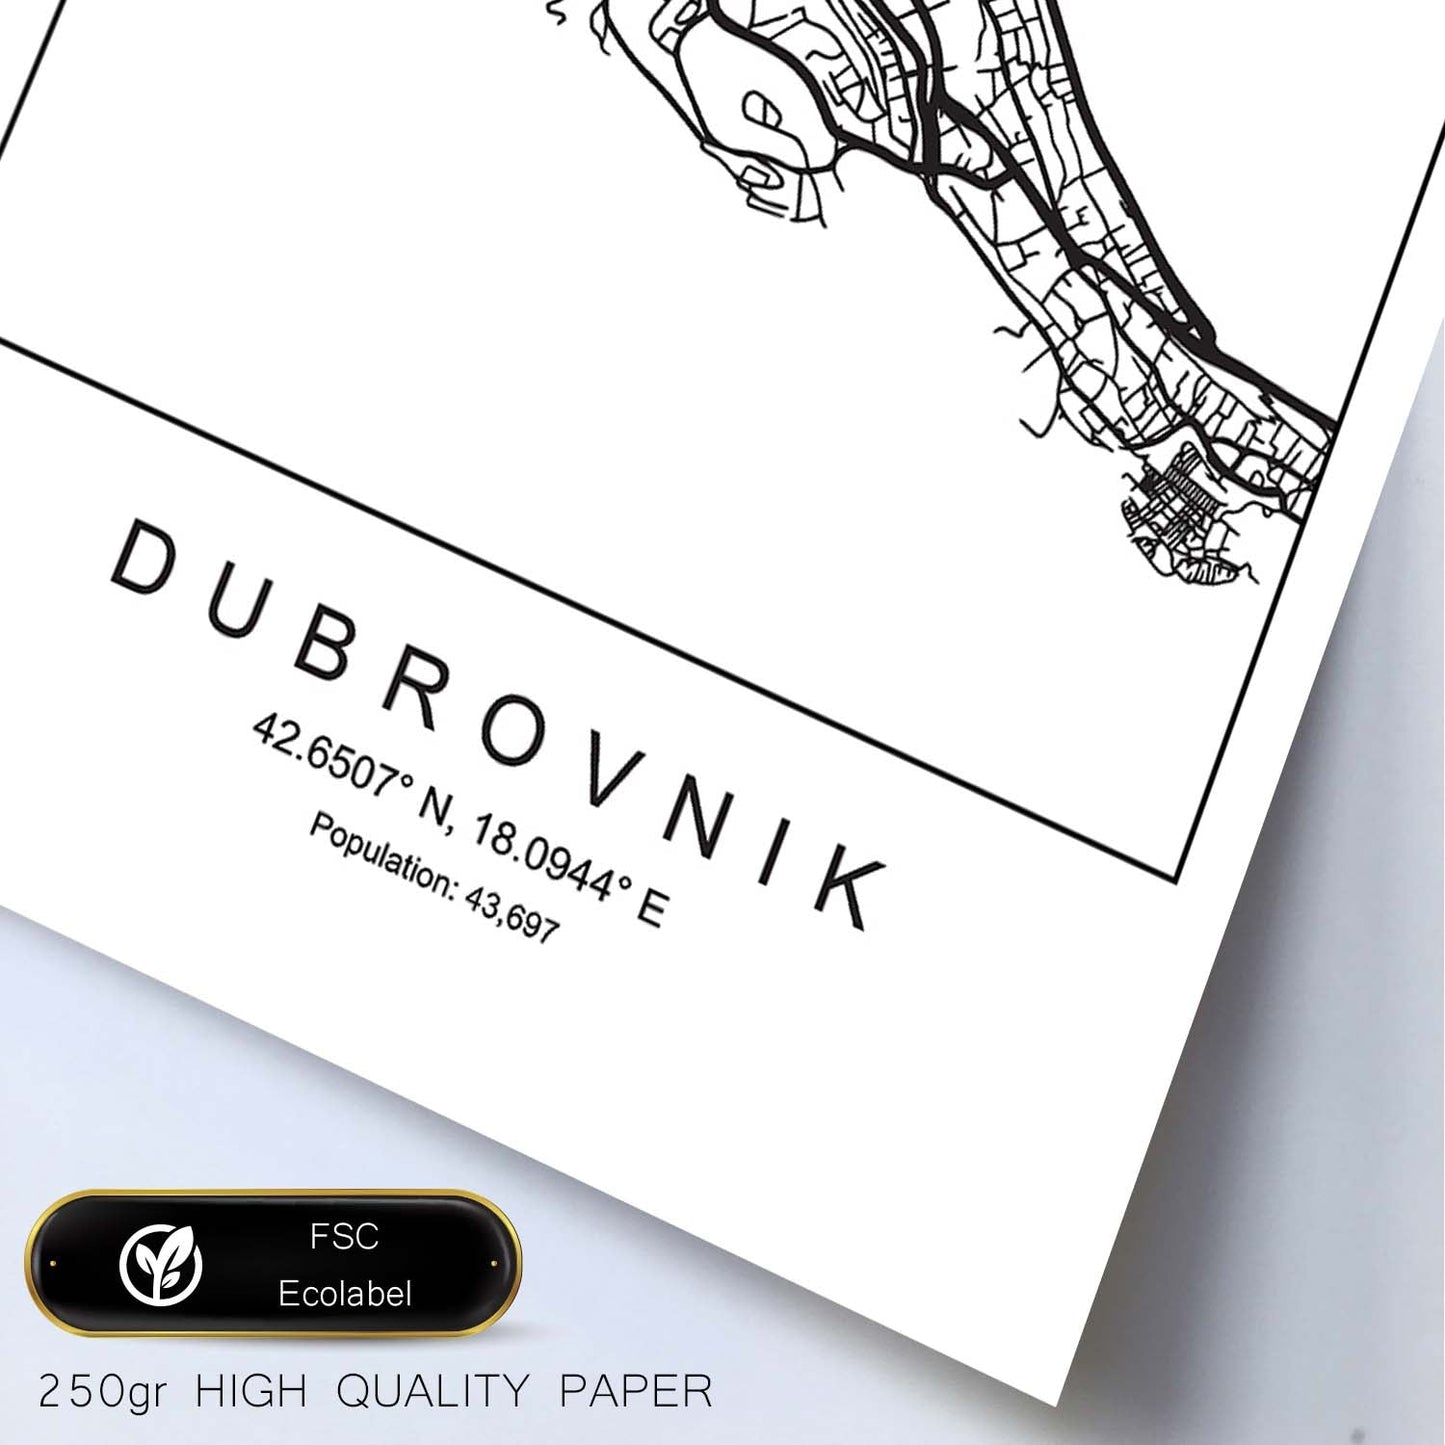 Lámina mapa de la ciudad Dubrovnik estilo nordico en blanco y negro.-Artwork-Nacnic-Nacnic Estudio SL